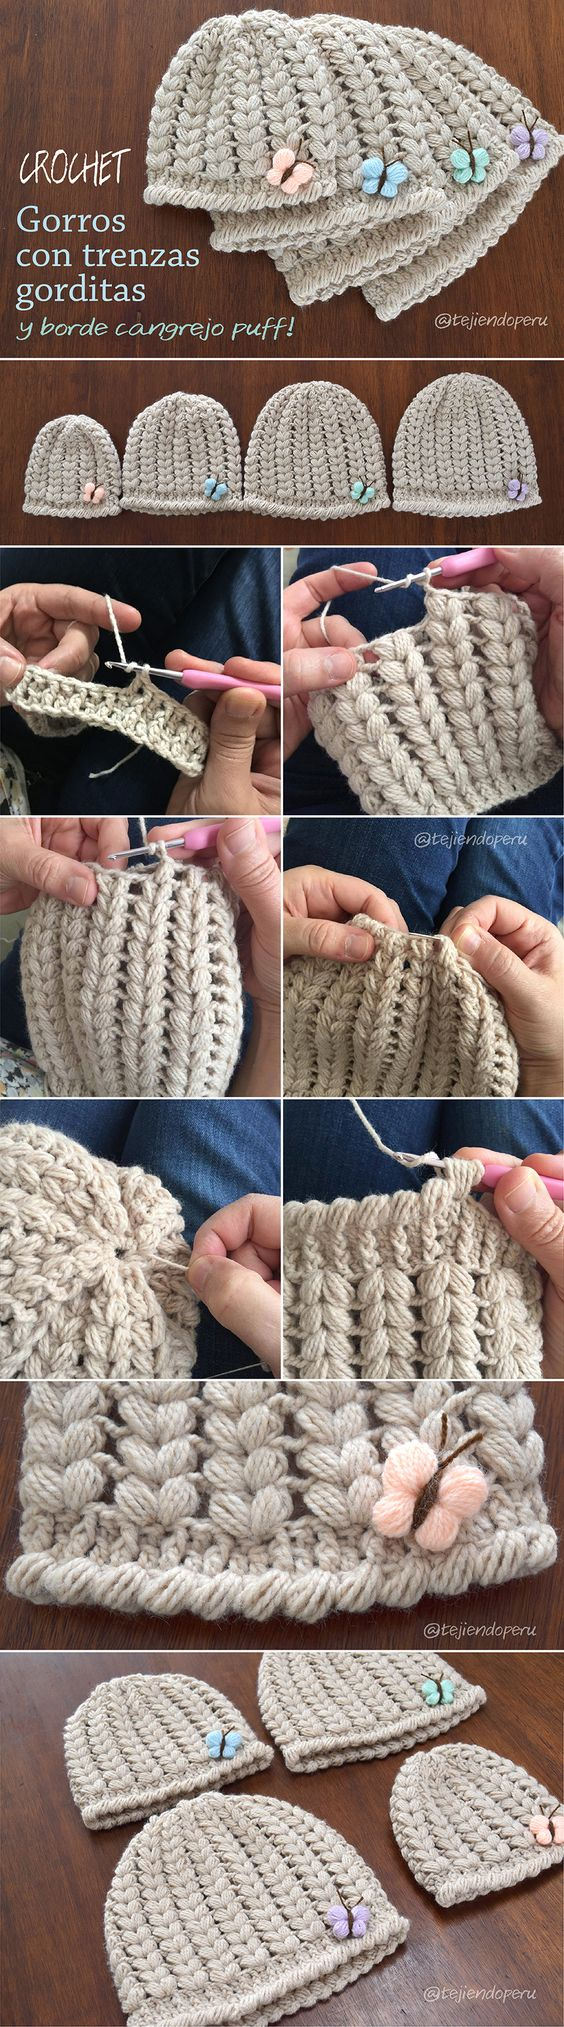 Puff Stitch Scarf Crochet Pattern Beautiful Puff Stitch Patterns I Cant Wait To Try